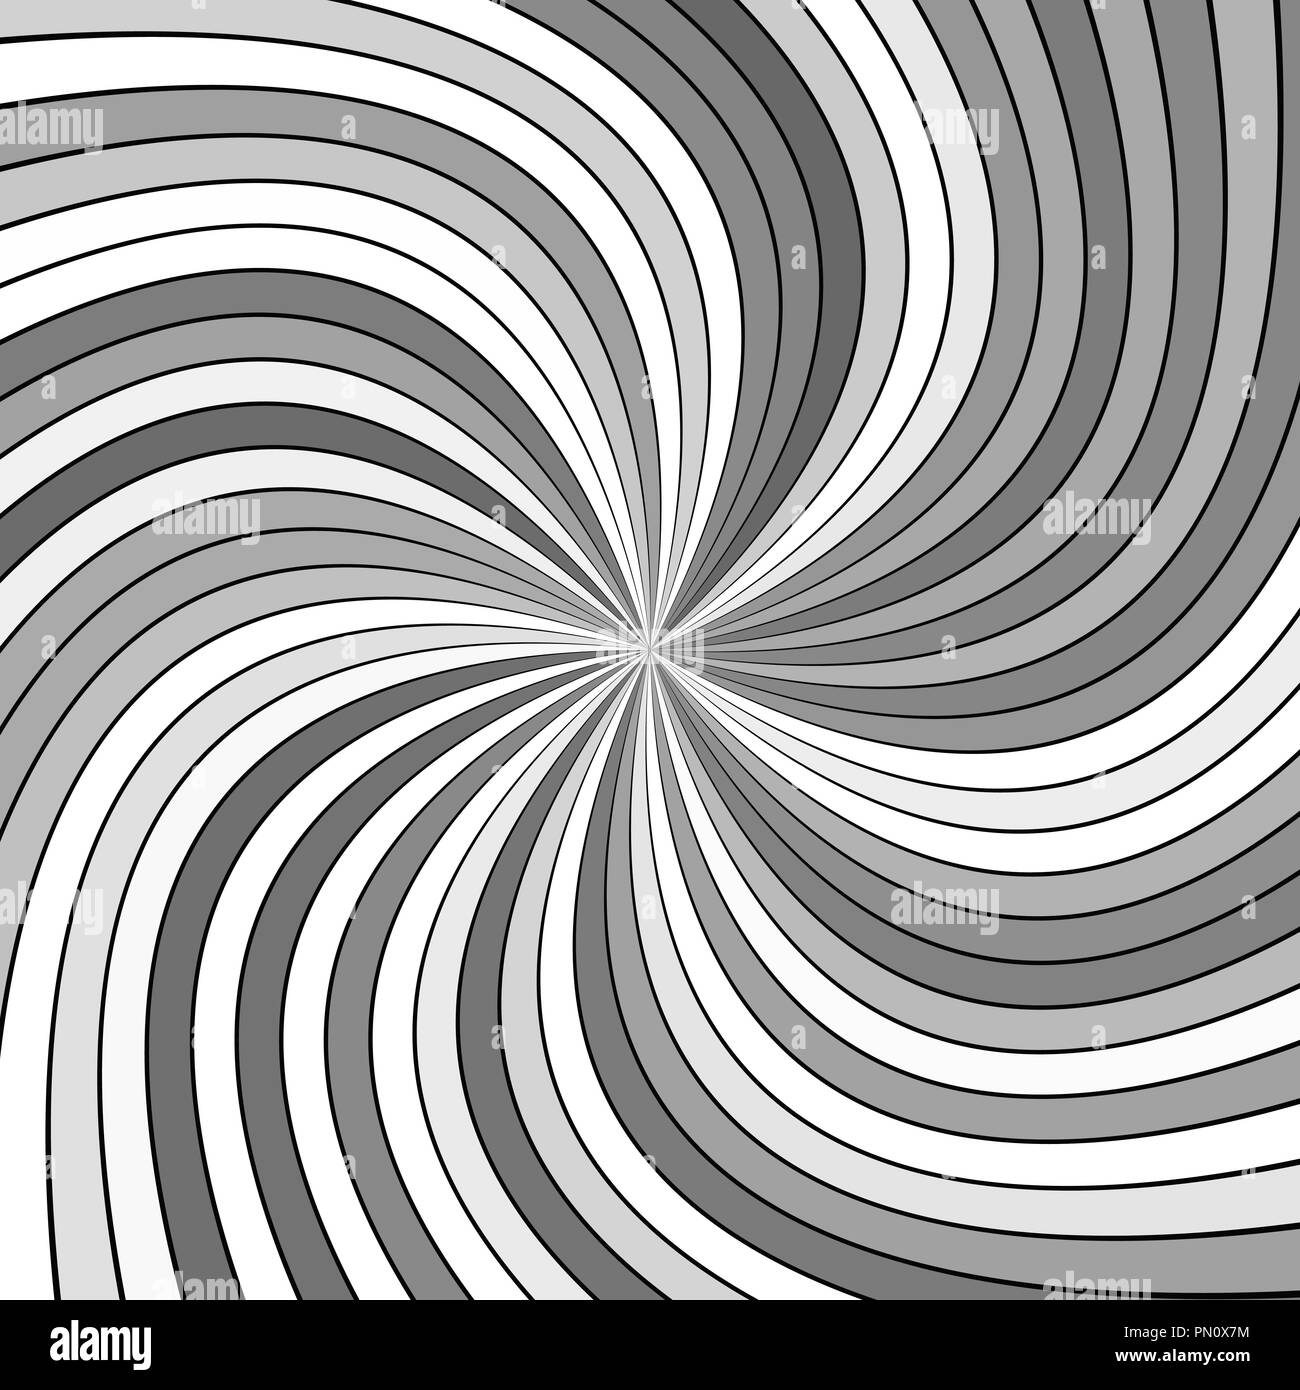 Grau psychedelischen abstrakte Swirl stripe Hintergrund - Vektor gekrümmte Abbildung Stock Vektor